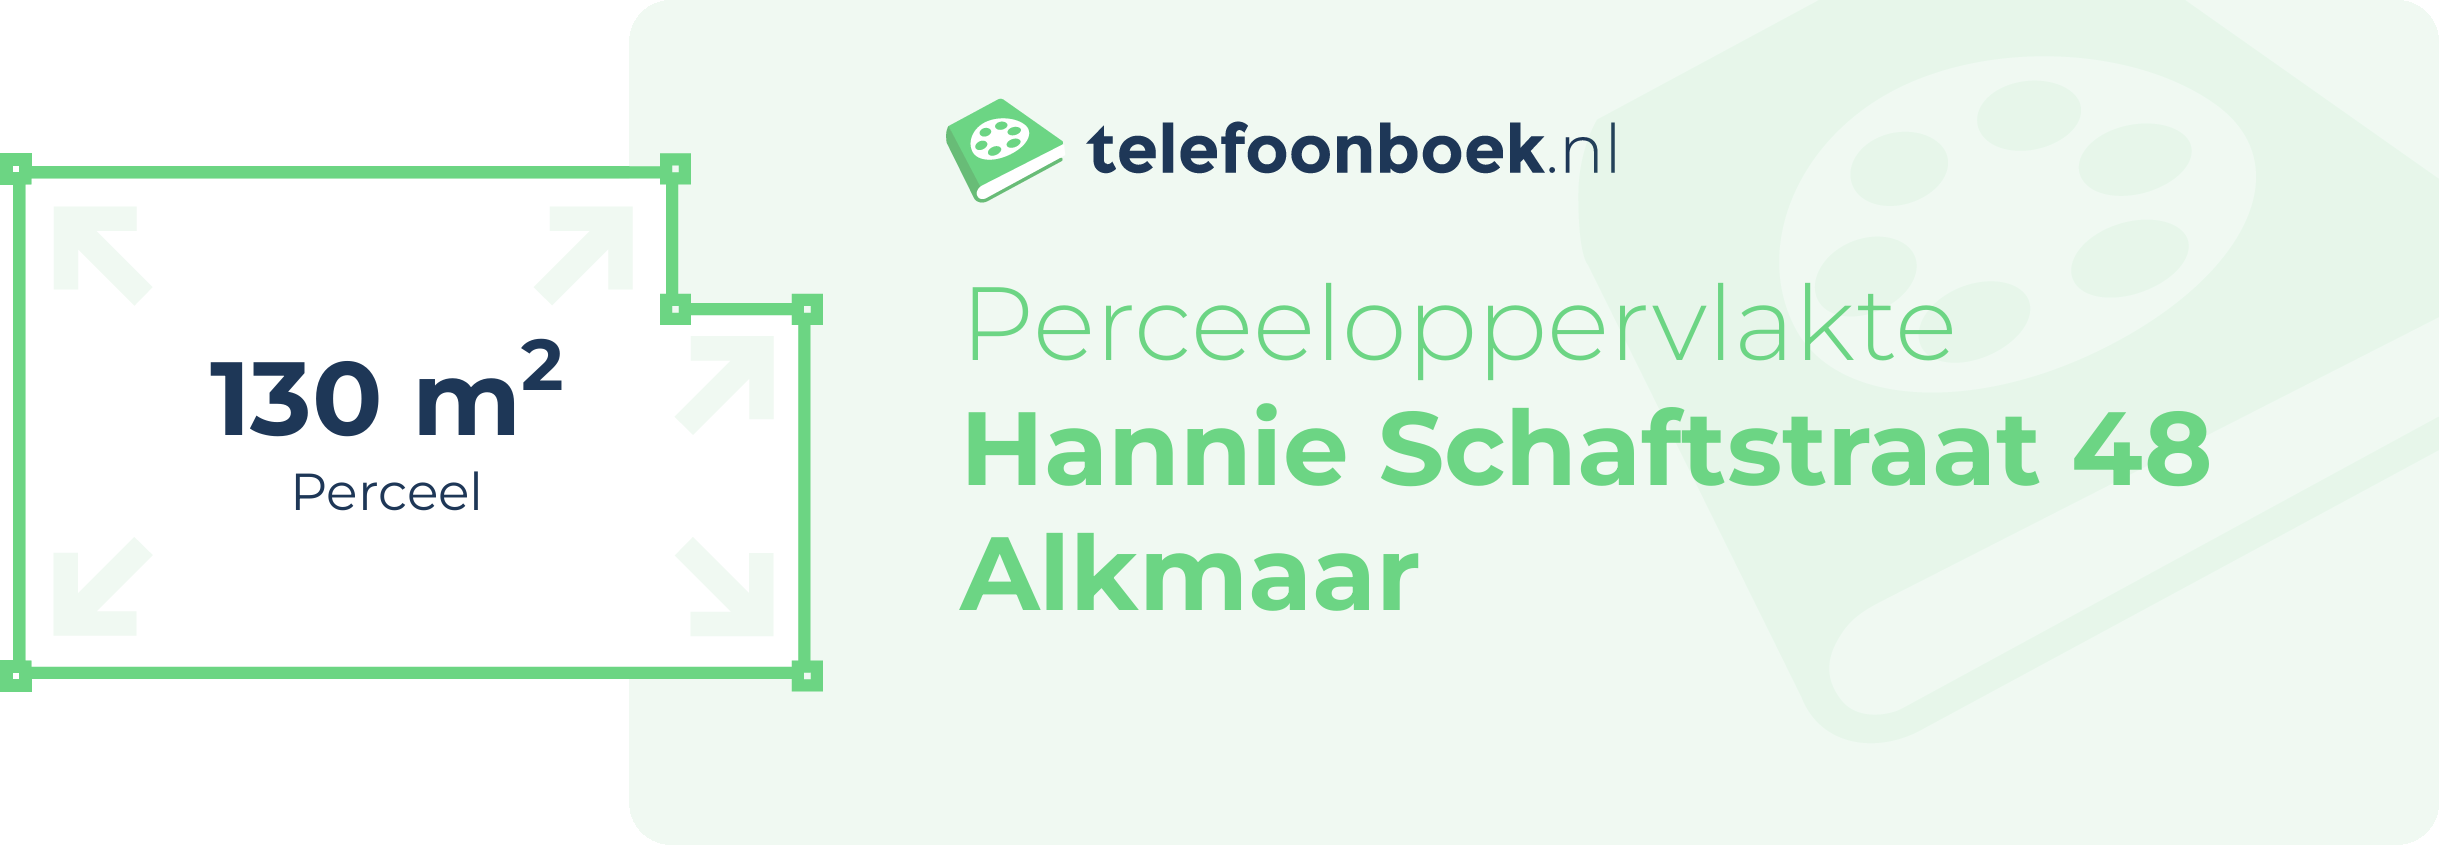 Perceeloppervlakte Hannie Schaftstraat 48 Alkmaar